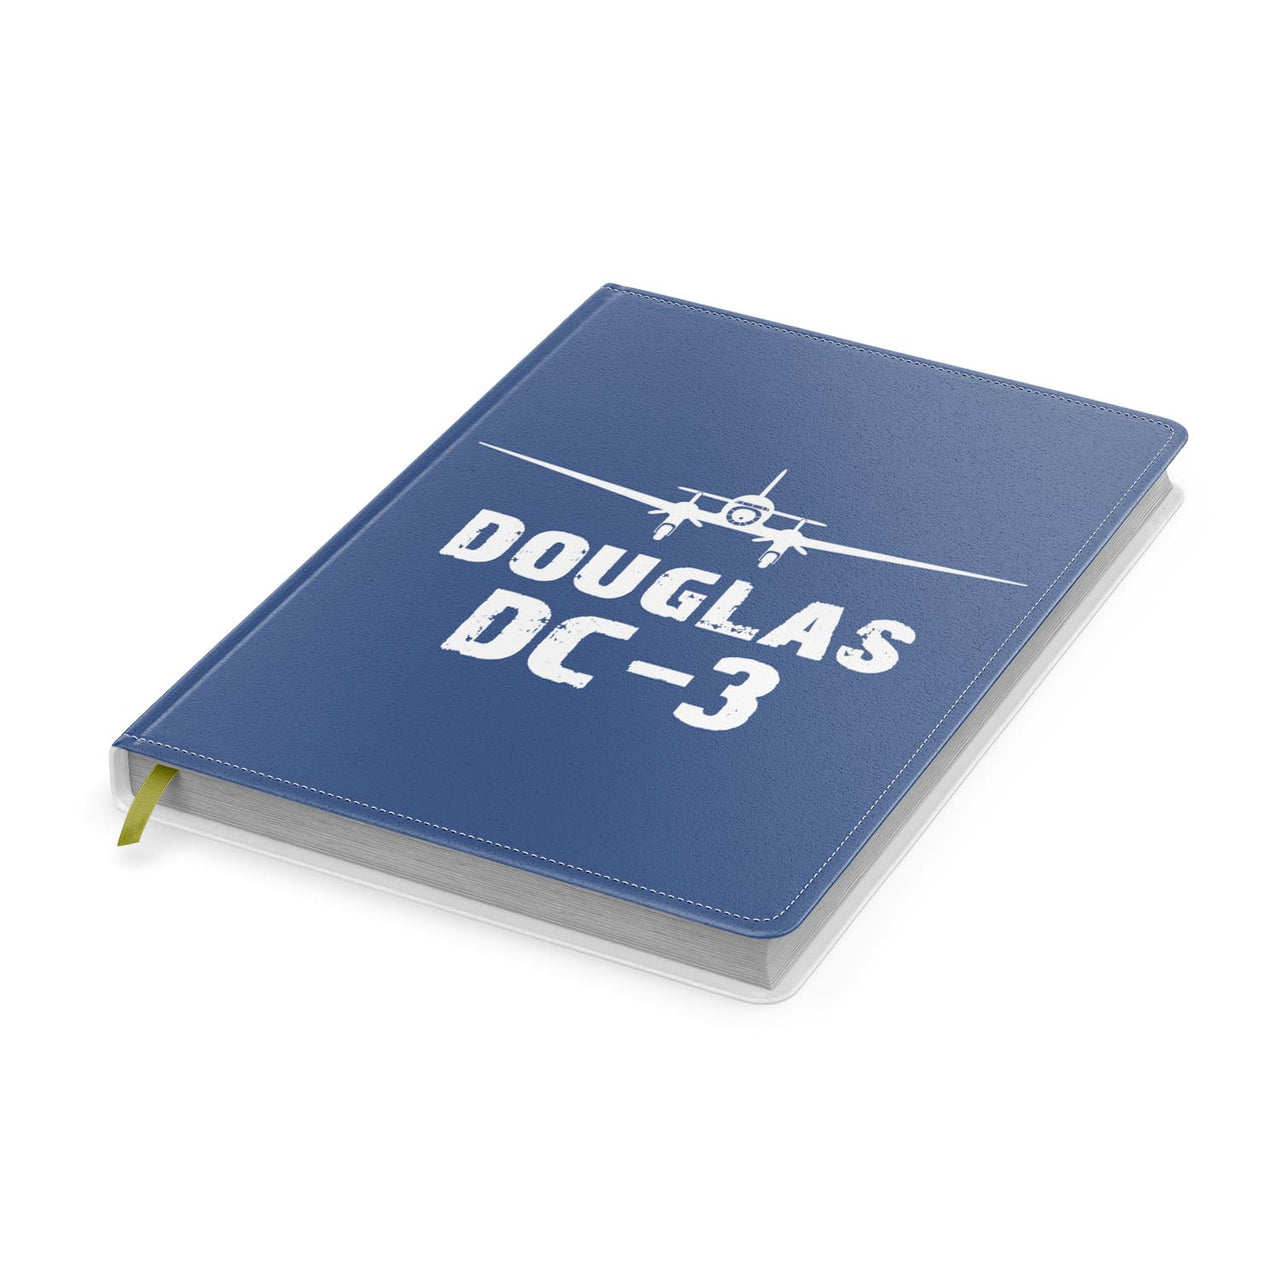 Douglas DC-3 & Plane Designed Notebooks